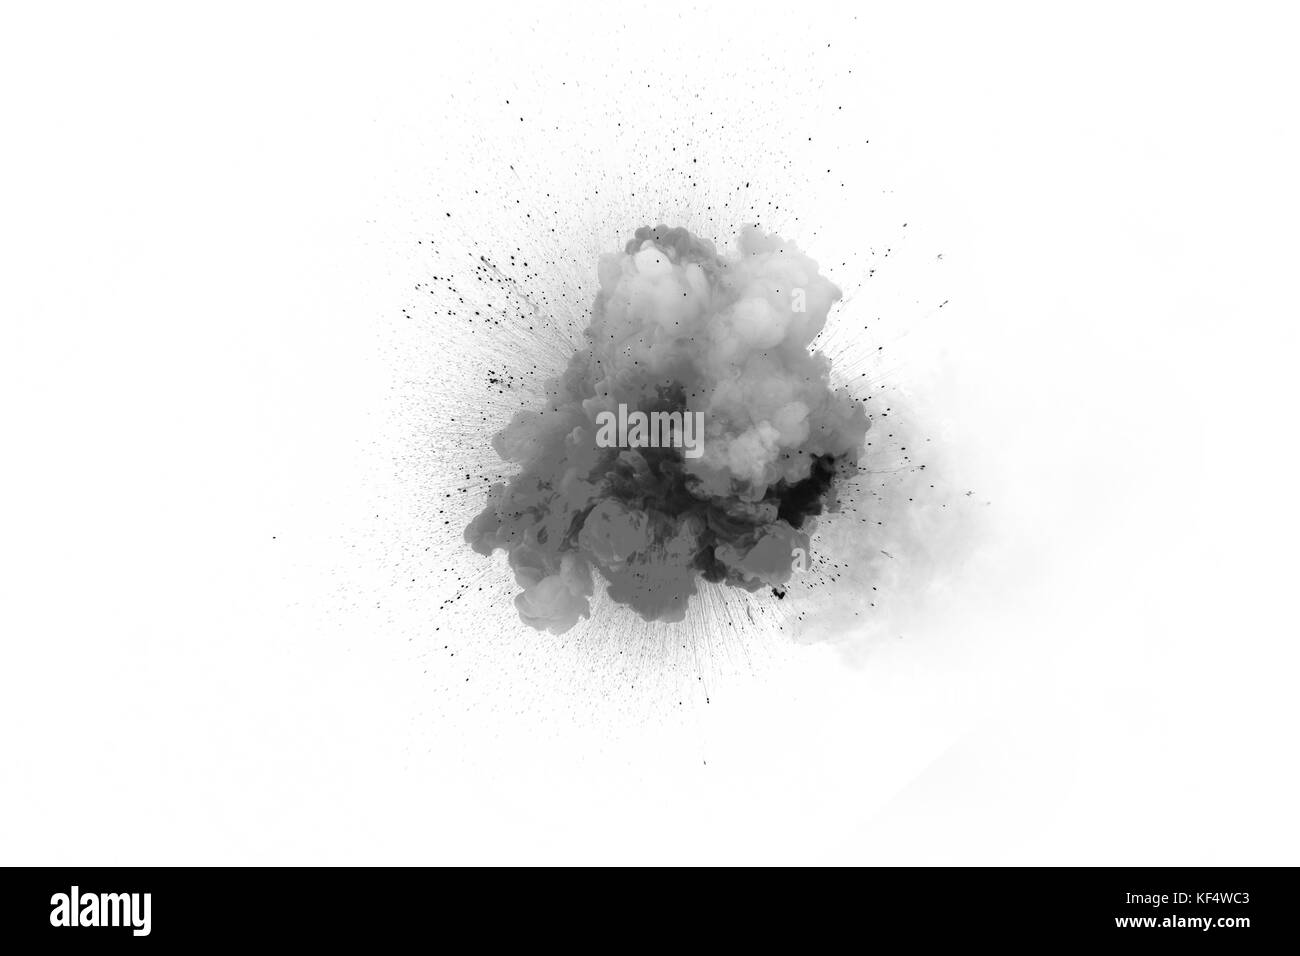 Esplosione di colore nero su uno sfondo bianco. esplosione di gas. la detonazione della bomba. Foto Stock